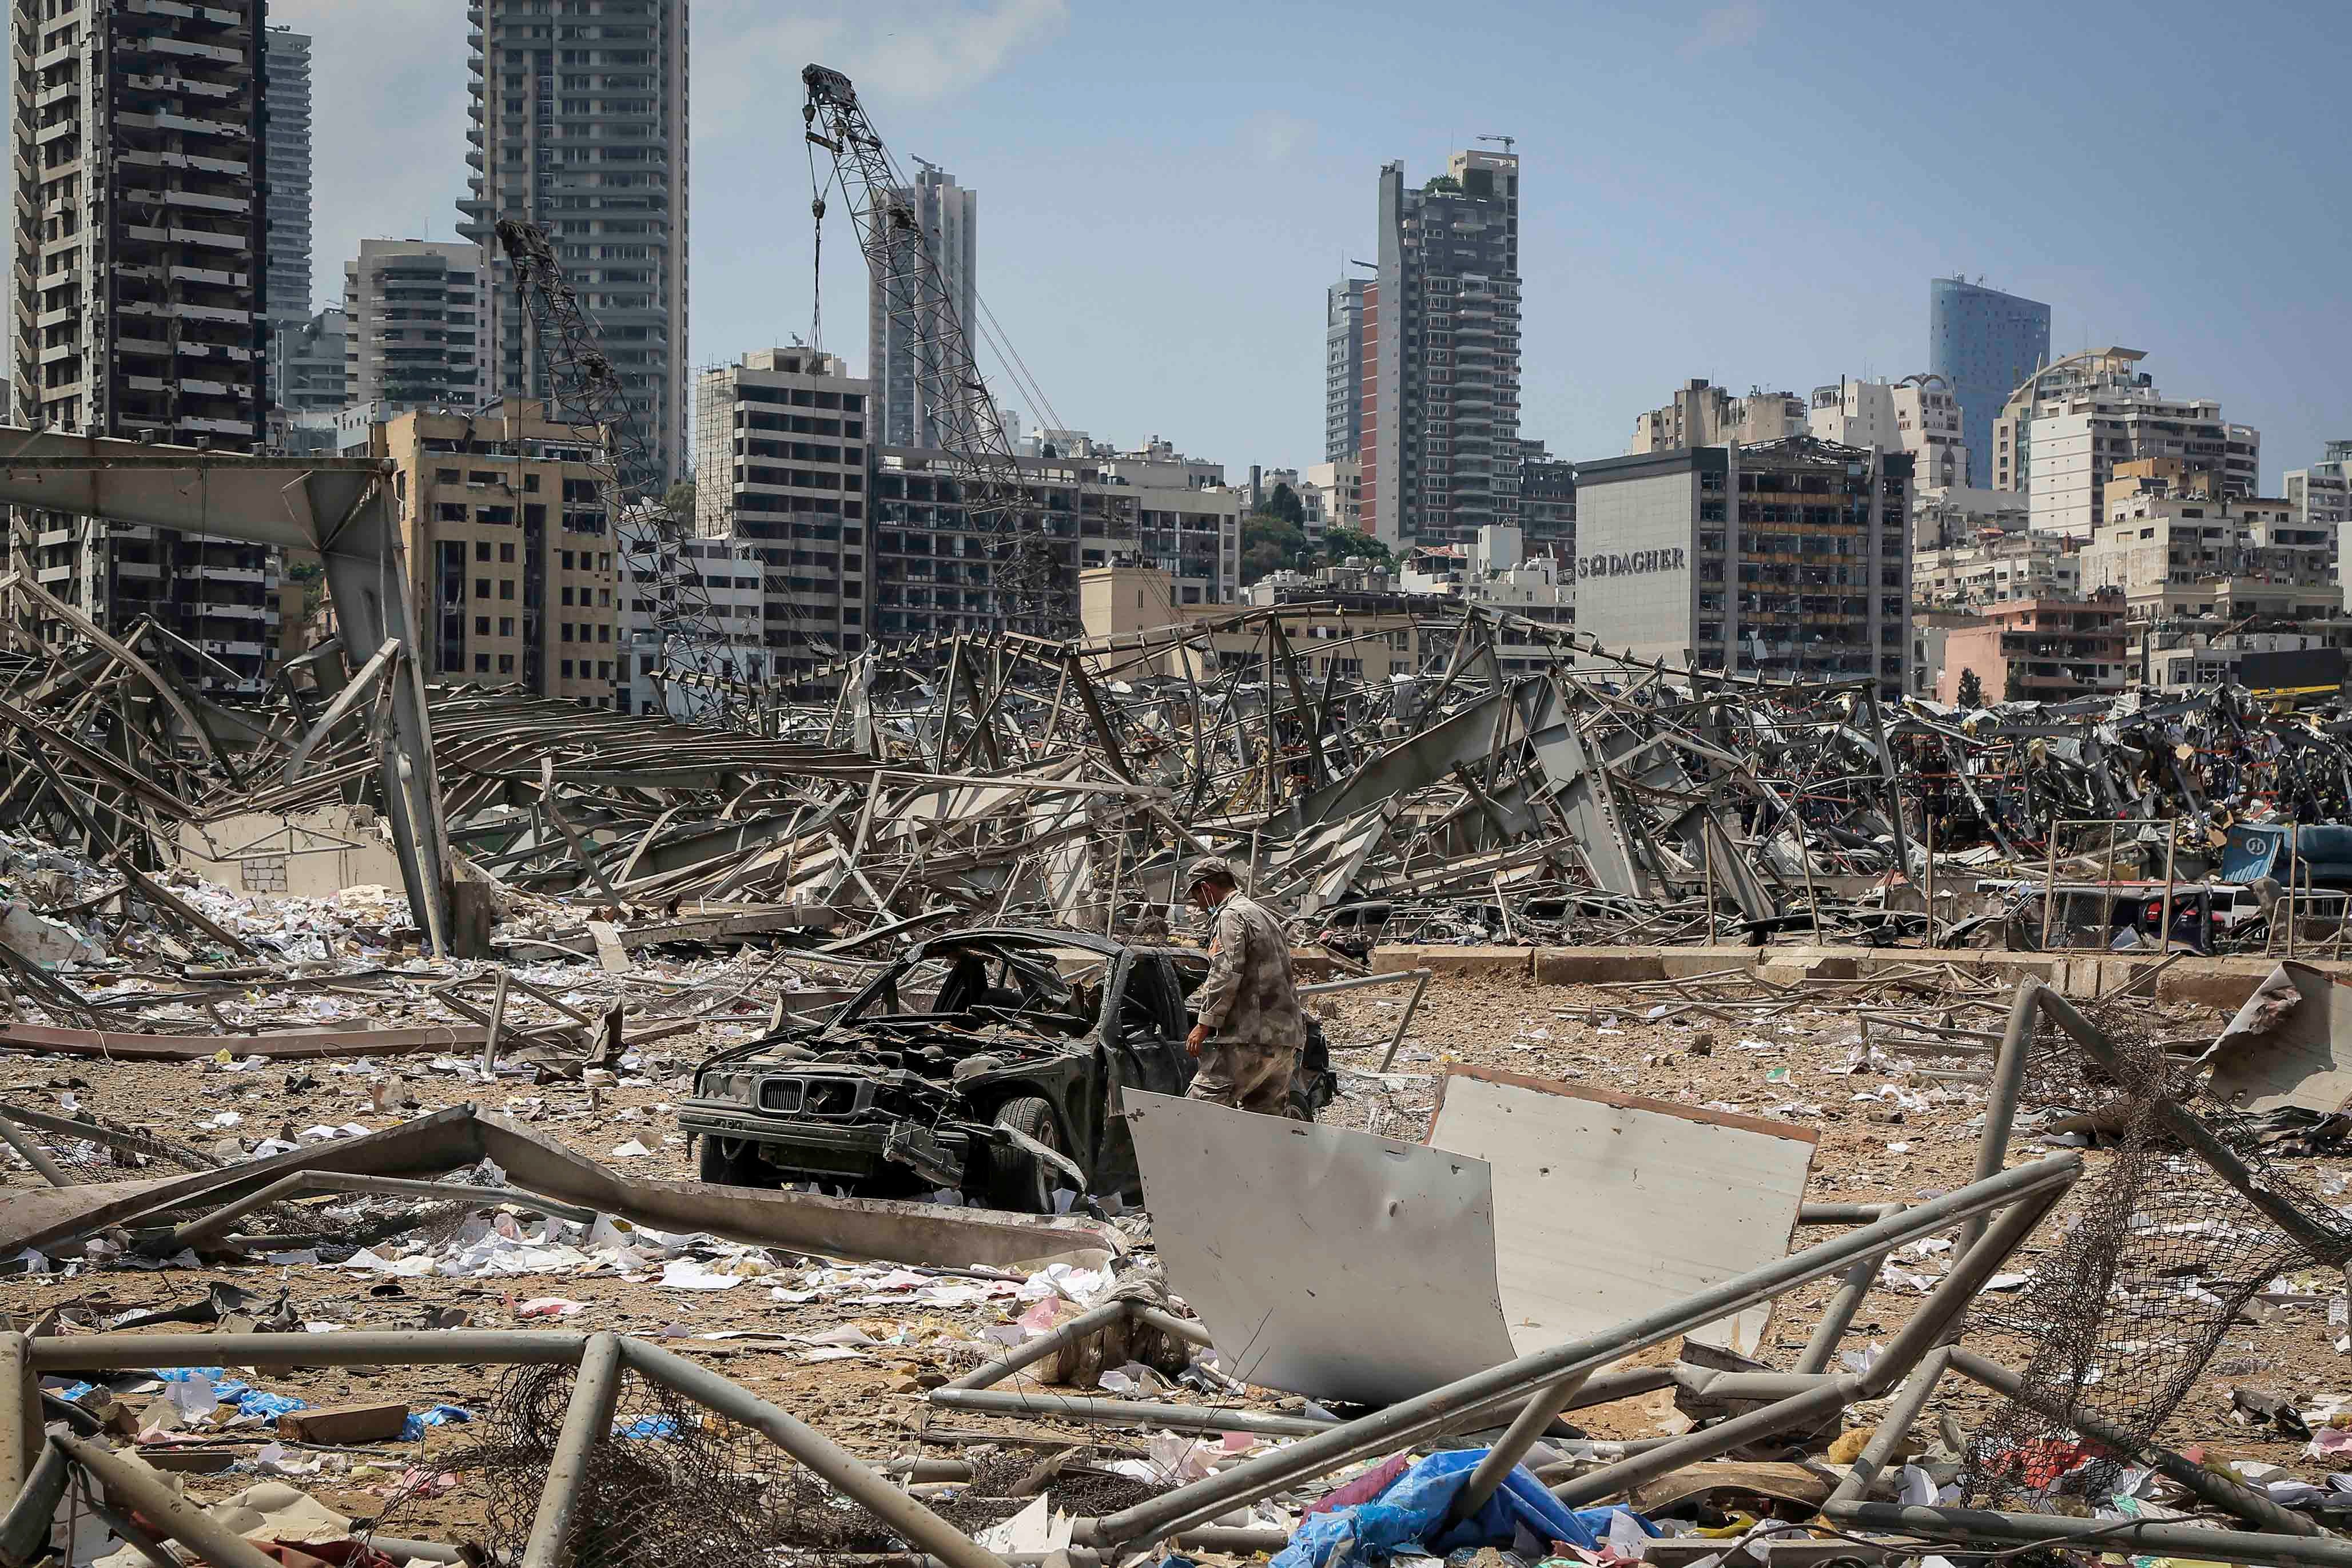 مخلفات انفجار مرفأ بيروت الذي دمر المدينة وقتل أكثر من 200 شخصا وجرح أكثر من 6 آلاف، وترك 300 ألف شخص بلا مأوى. 